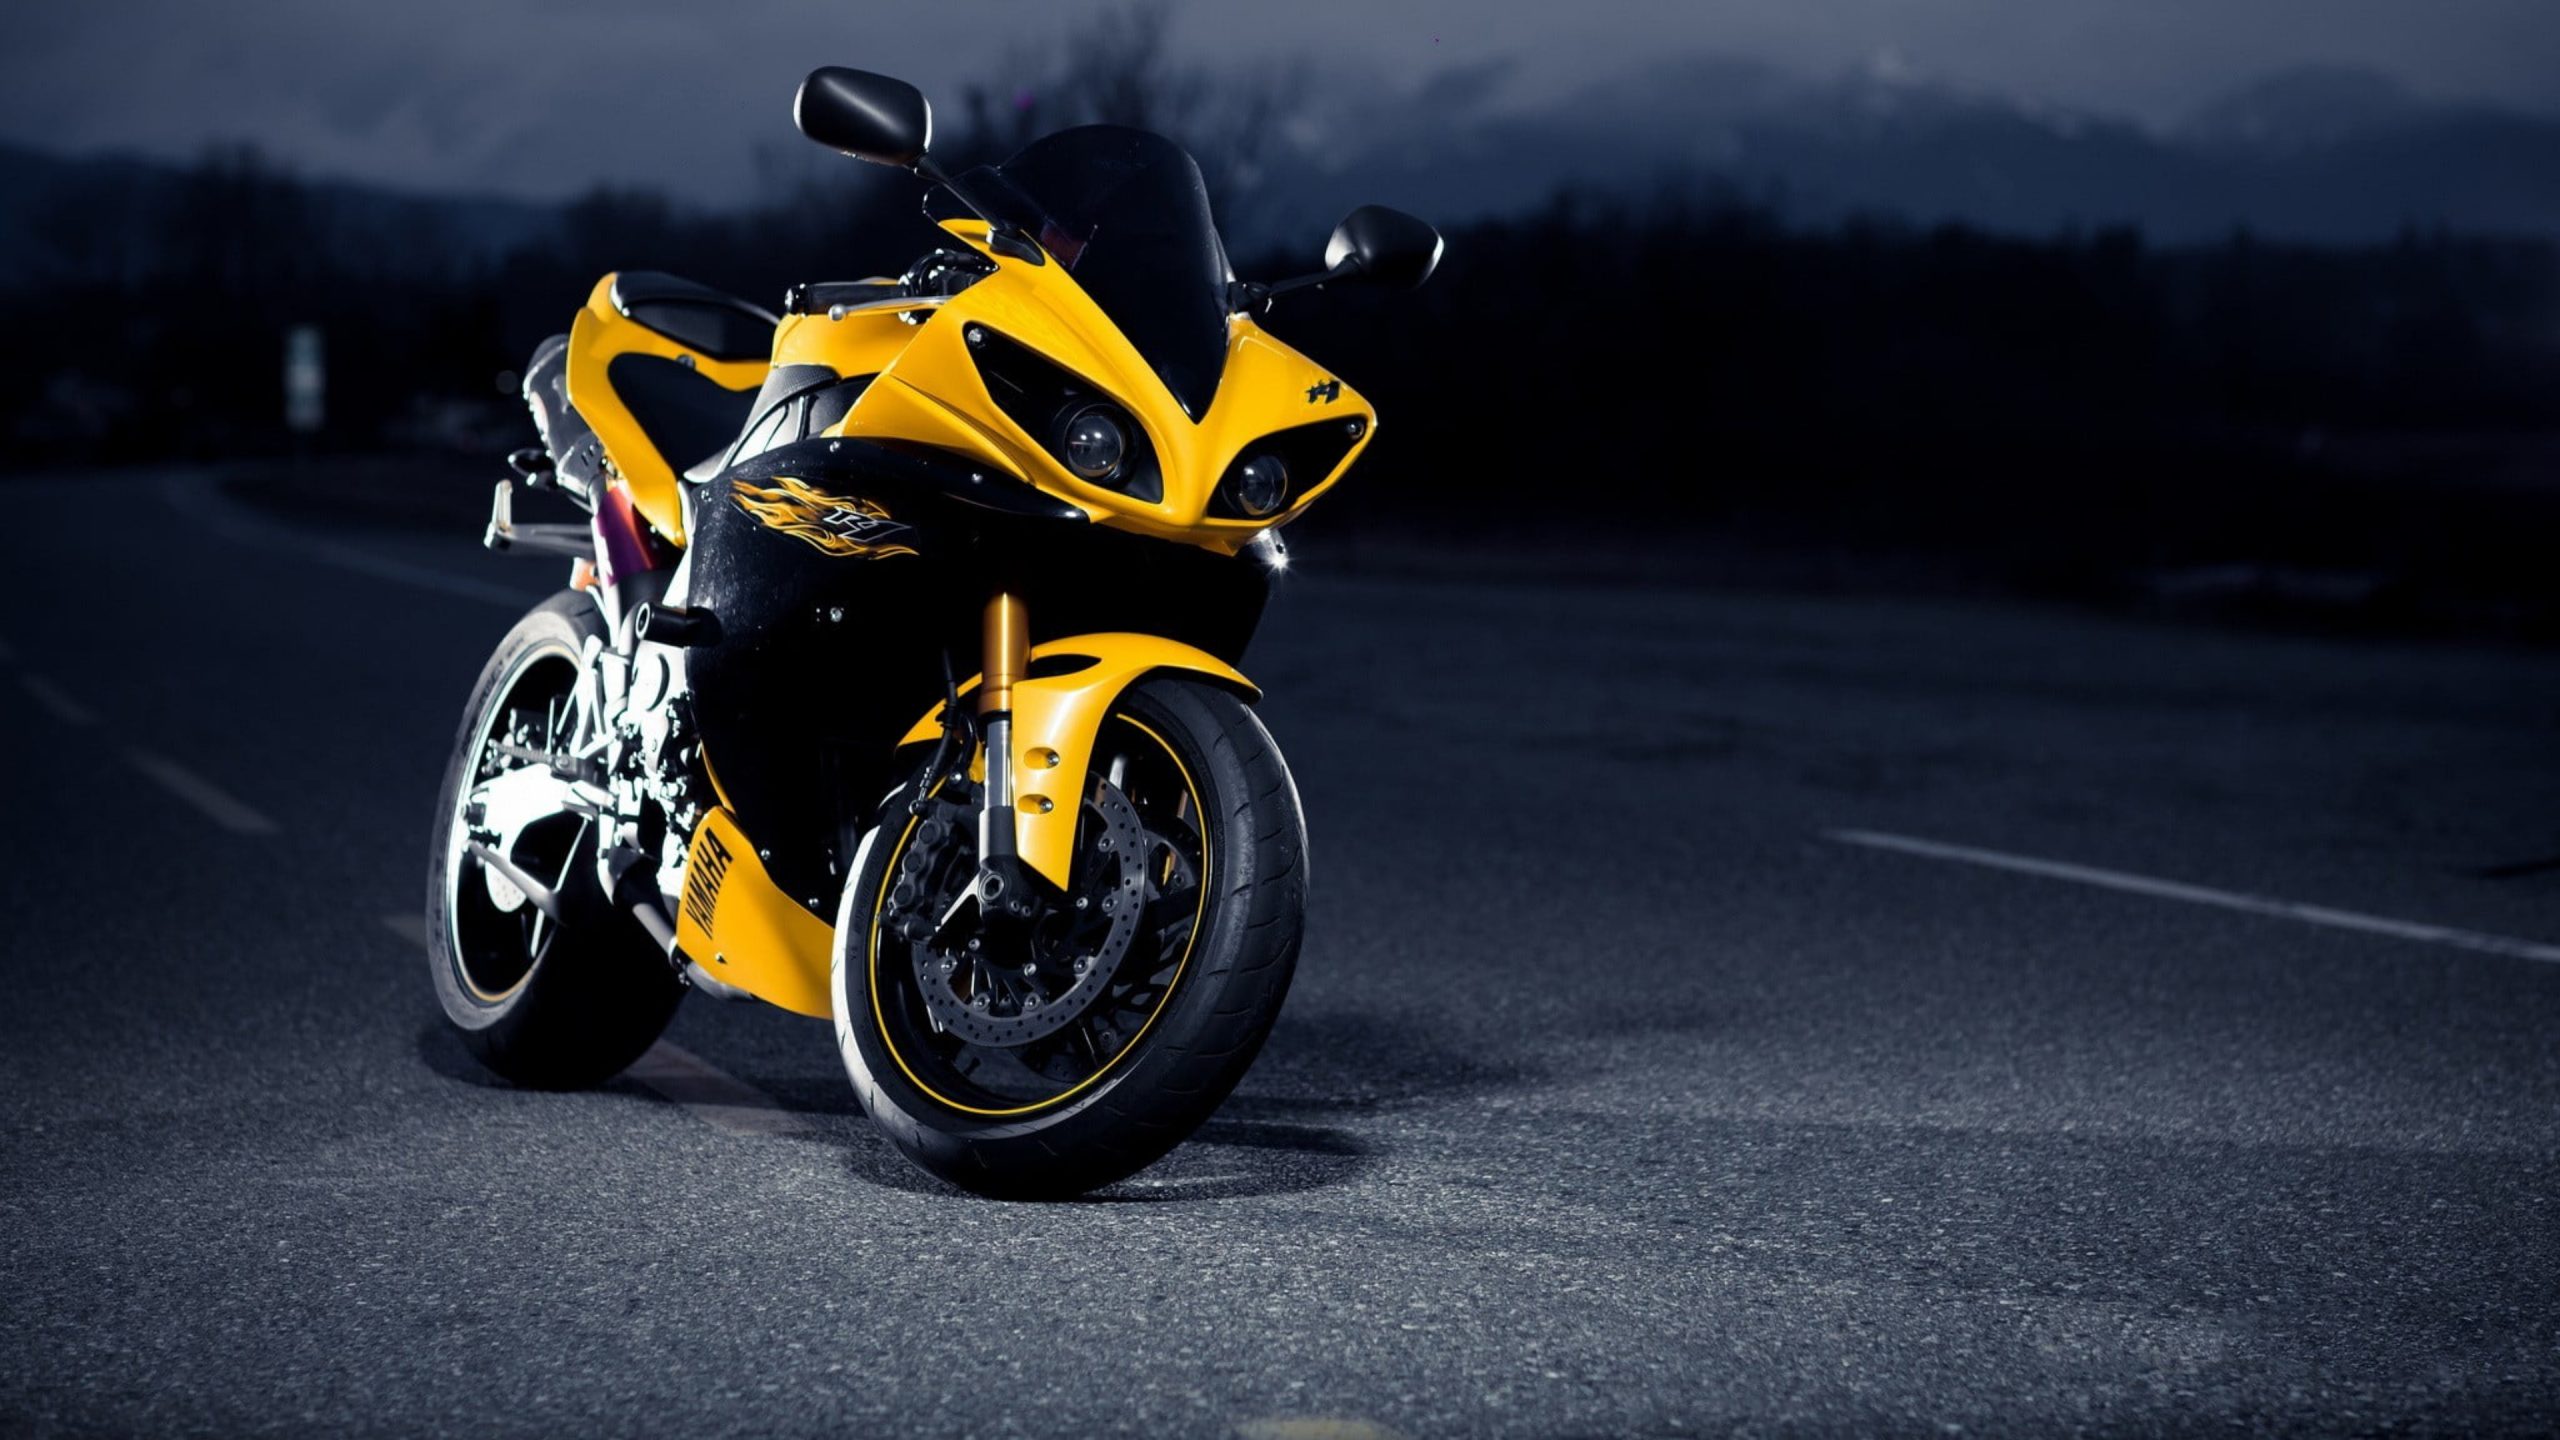 Yamaha Motorcycle [4K] Wallpapers | BadAssHelmetStore